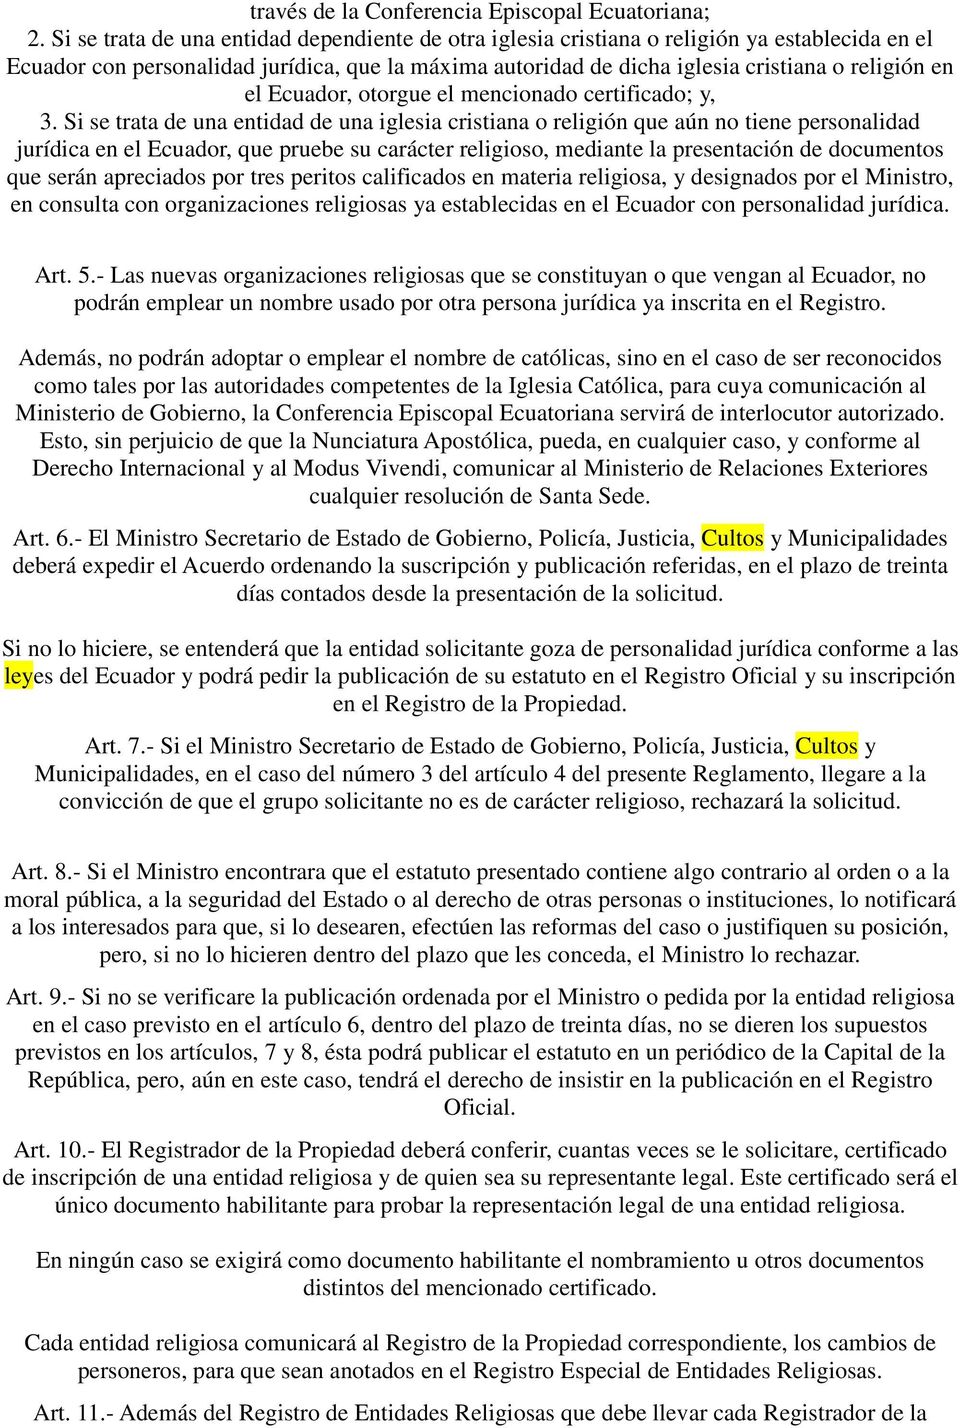 Ecuador, otorgue el mencionado certificado; y, 3.